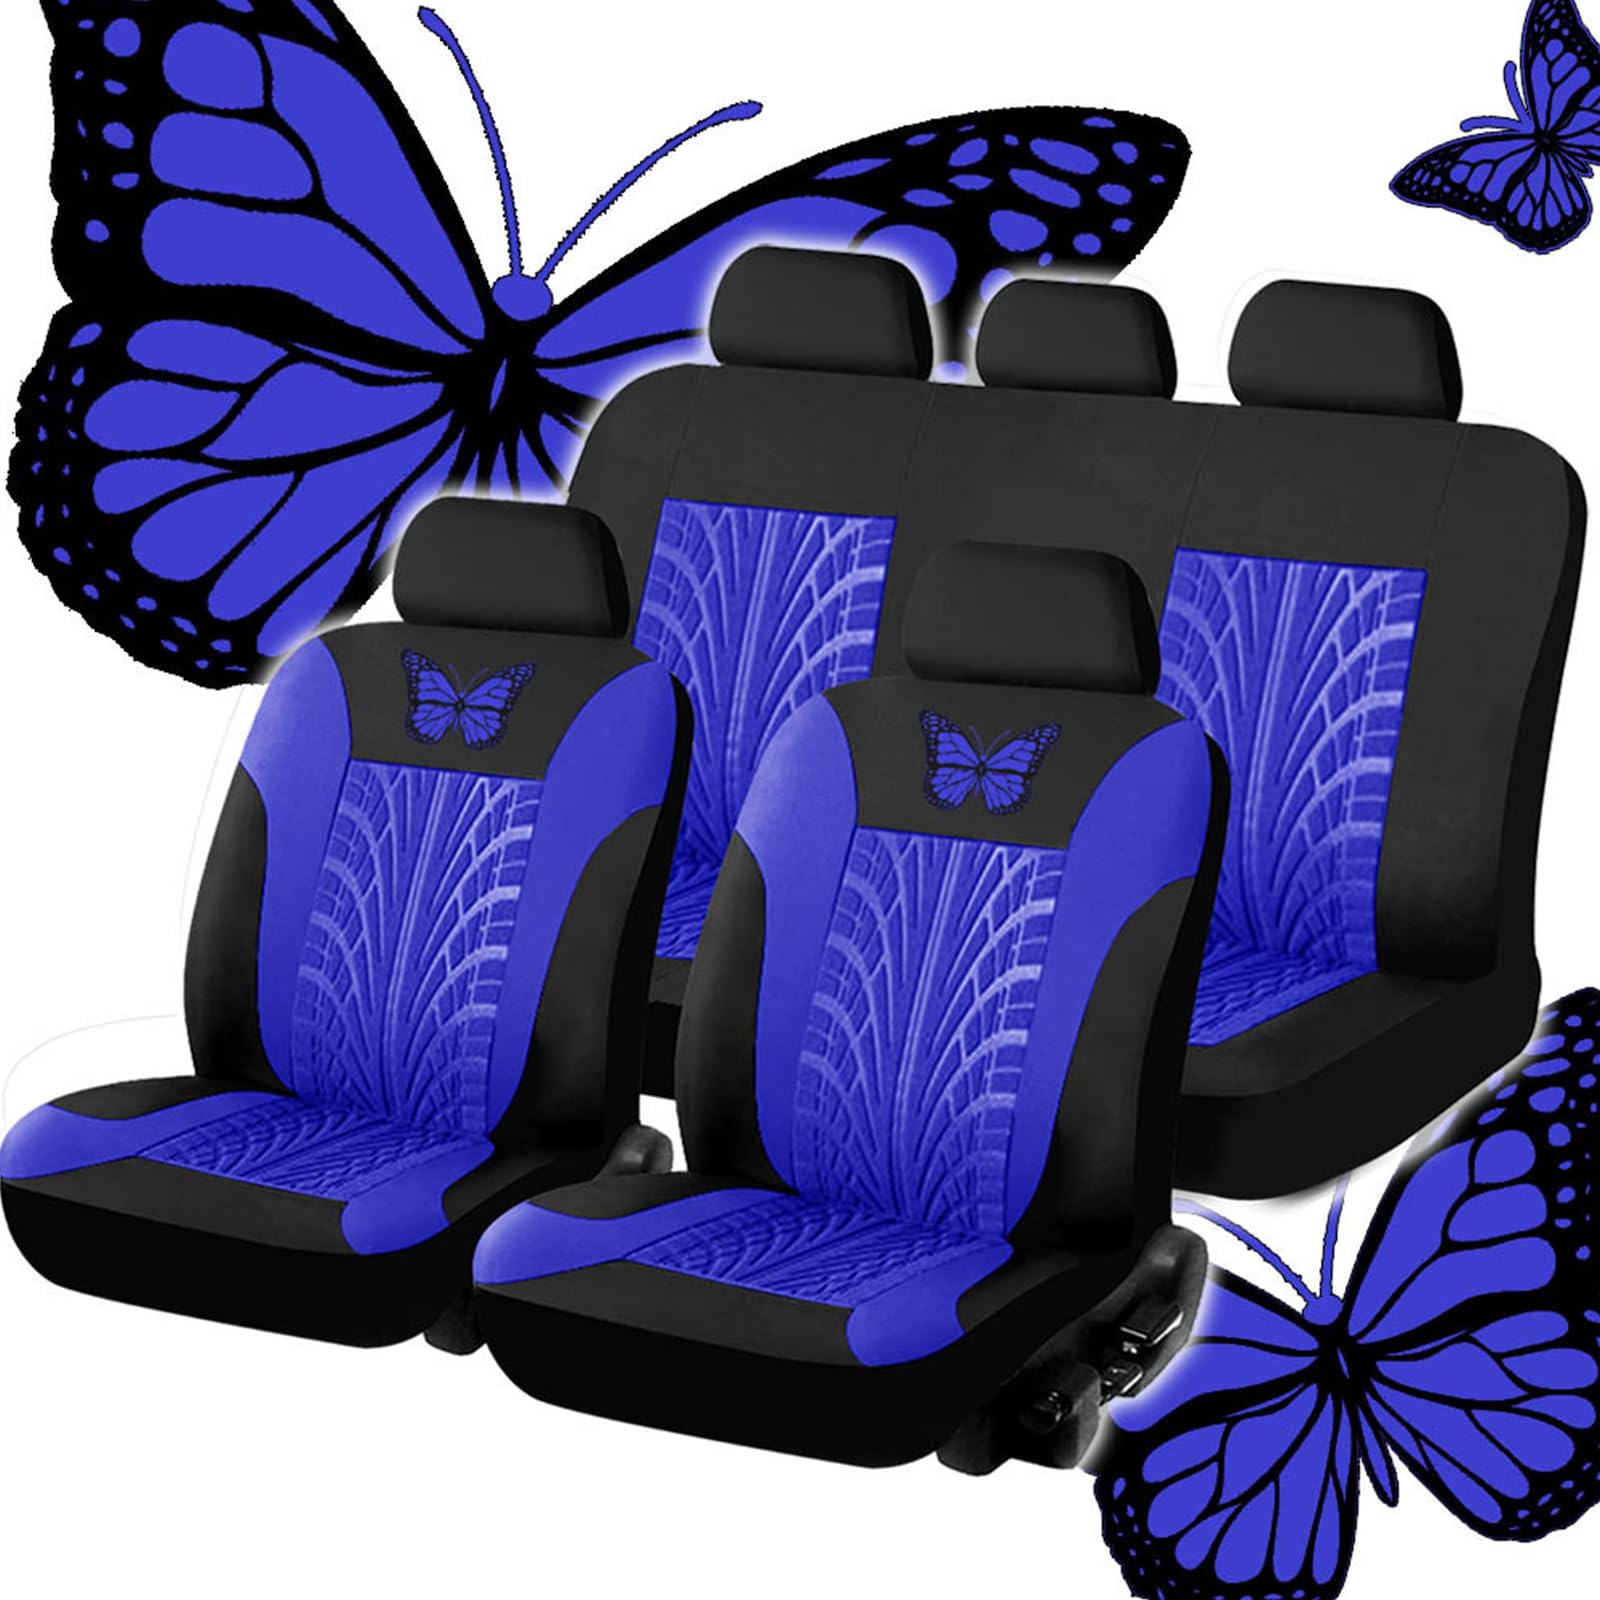 SNXLW 5 Sitzplätze Universal Auto Sitzbezüge Sets für Mercedes Benz/AMG A160/A180/A180d/A200/A220d/A250/A250e/A260 Autositzbezug Vorne Hinten Schonbezüge Innenraum Zubehör,Blue von SNXLW